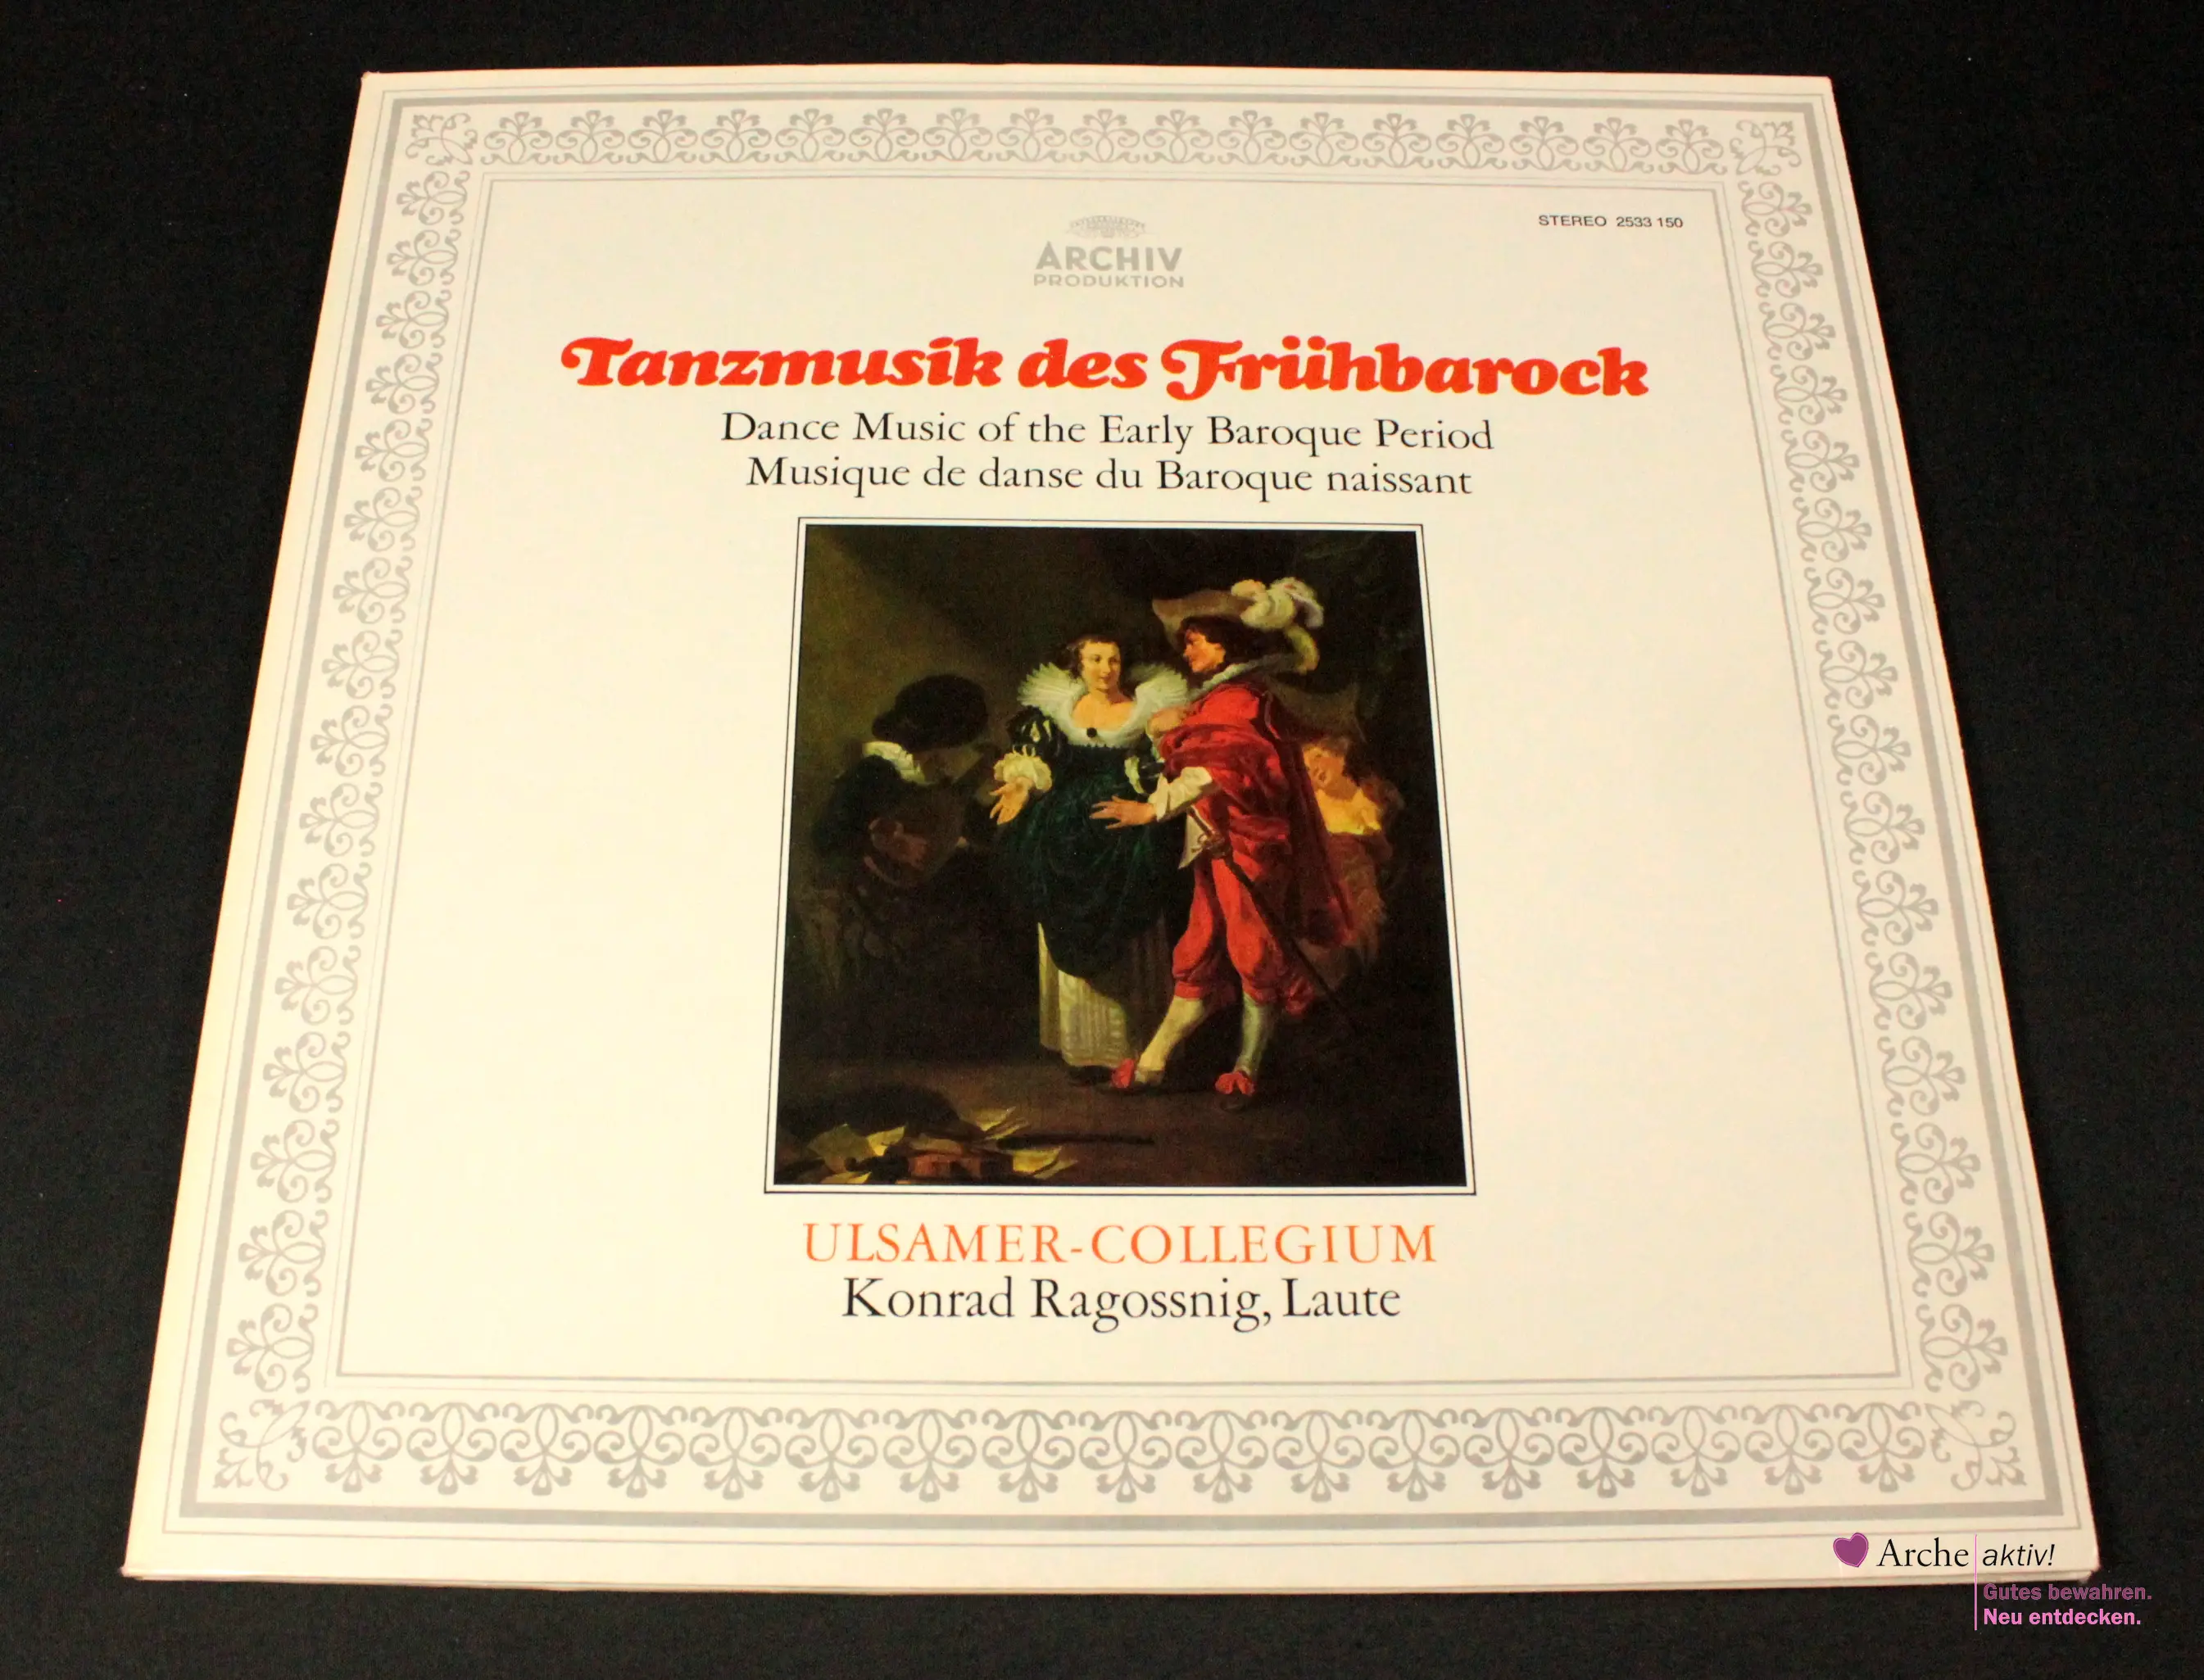 Ulsamer-Collegium, Konrad Ragossnig - Tanzmusik des Frühbarock (Vinyl) LP, gebraucht